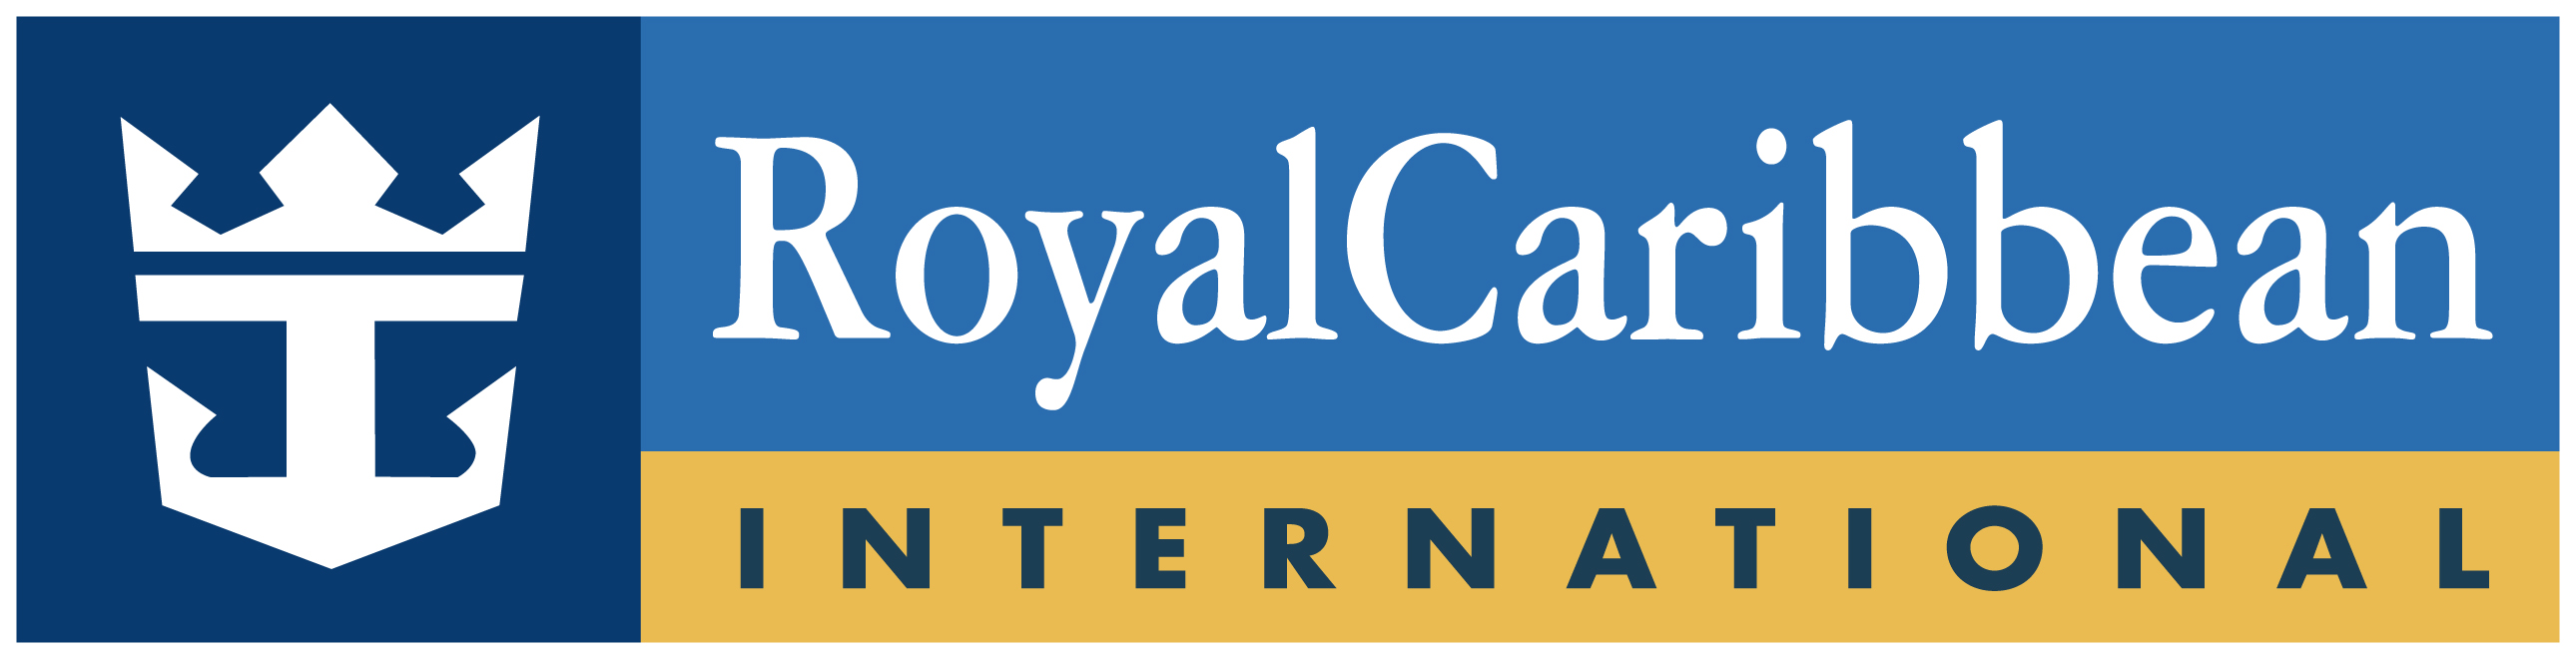 Royal-Caribbean_Logo.jpg